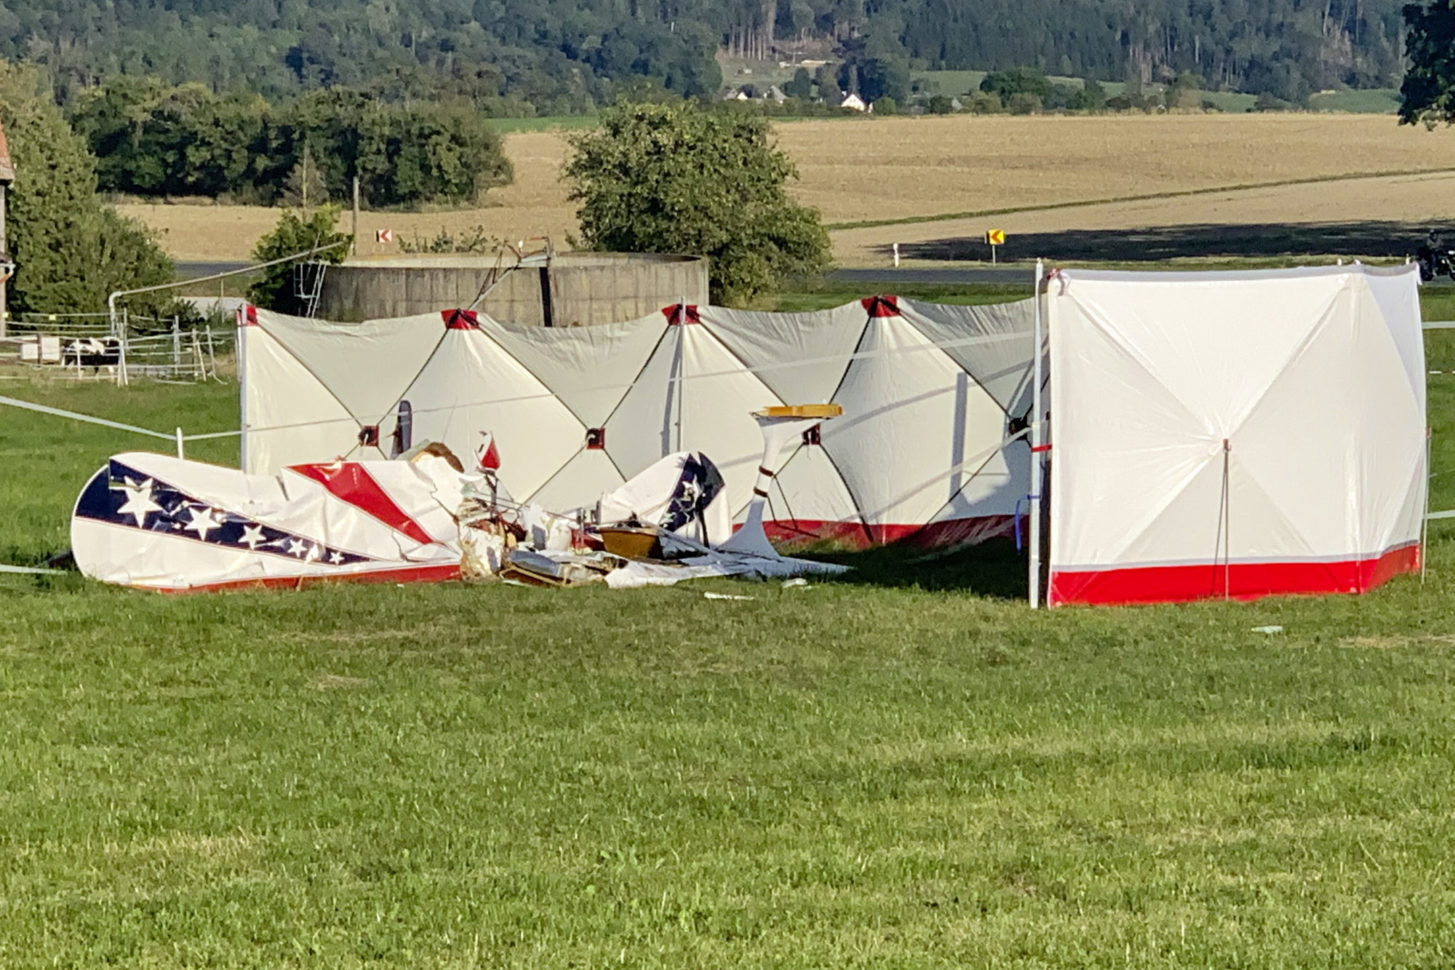 Kunstflug ohne Berechtigung: Privatpilot stirbt bei Flugzeugabsturz